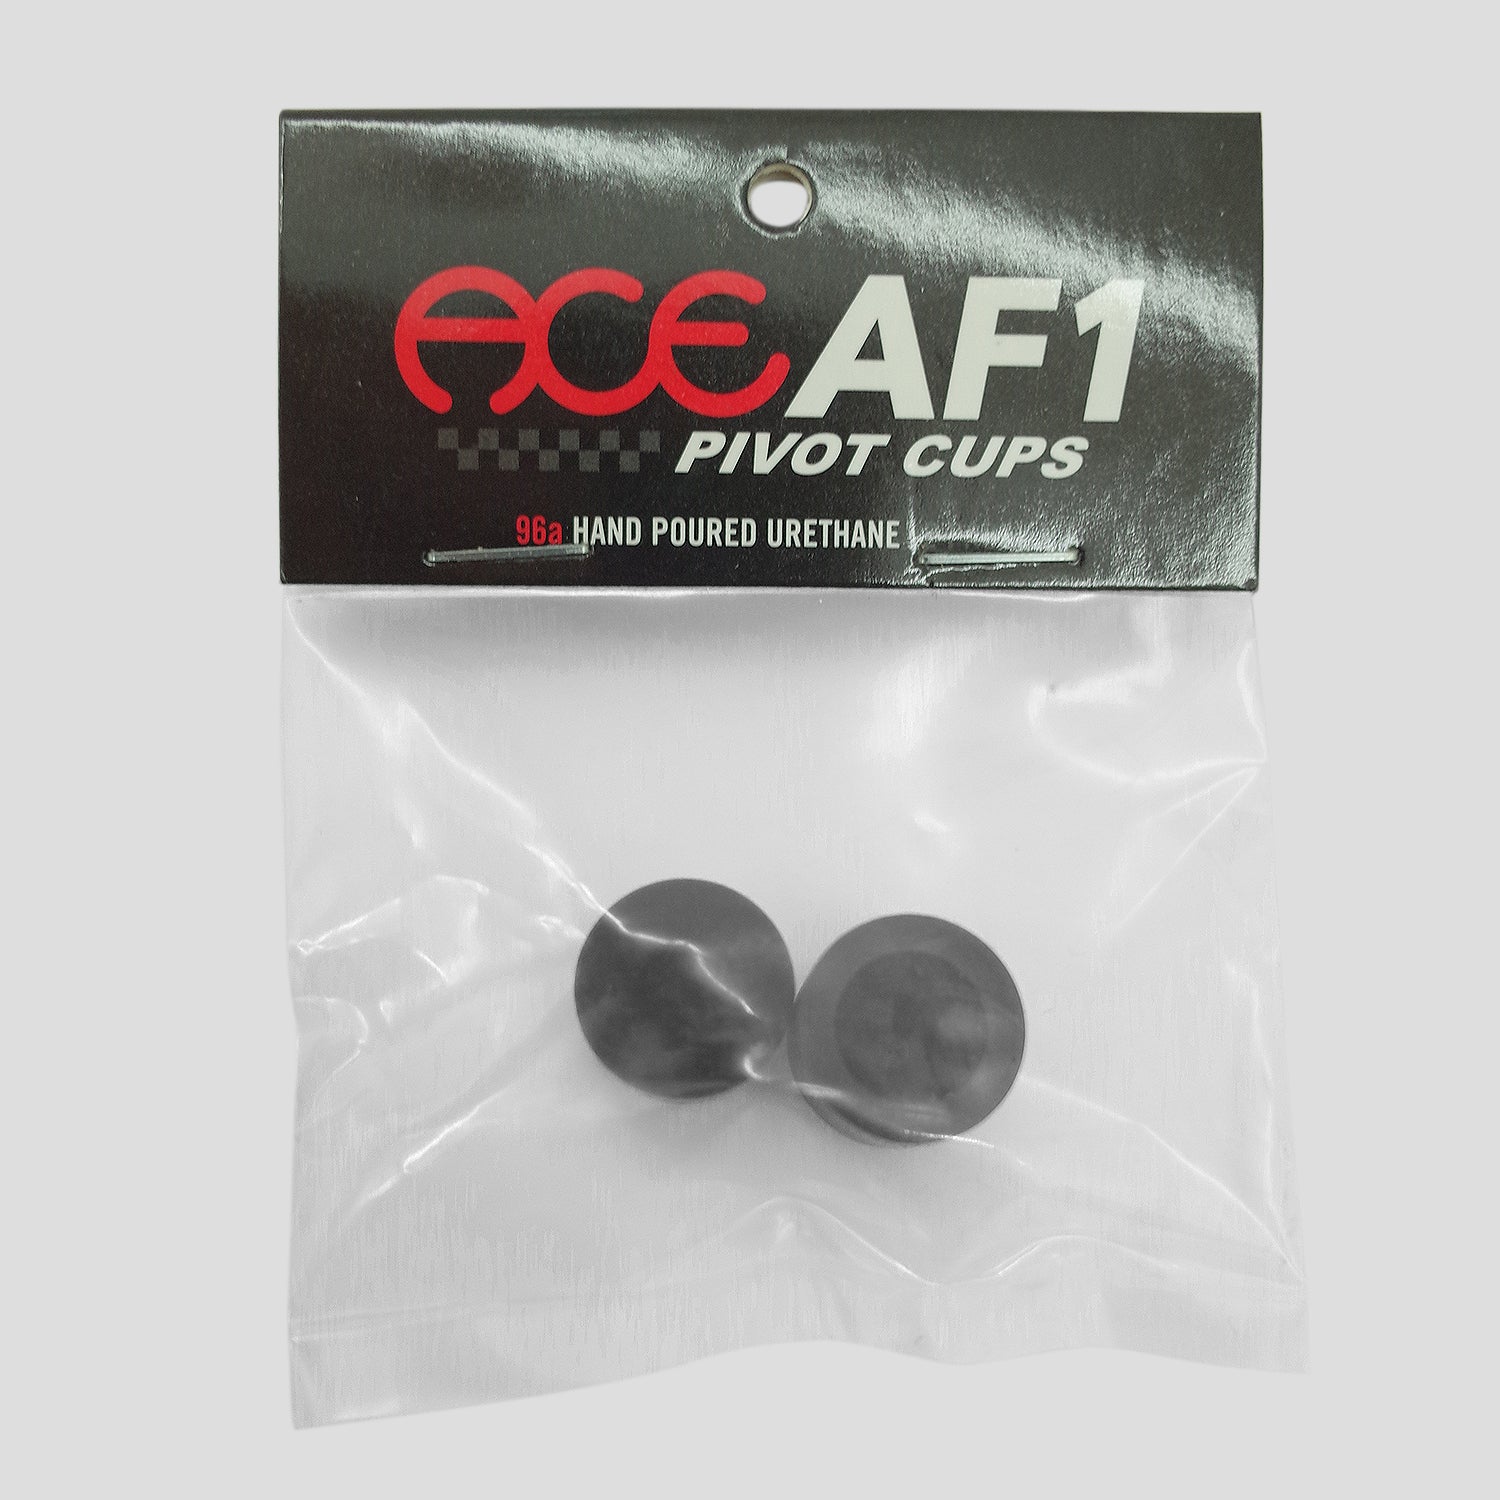 ACE AF1 PIVOT CUPS